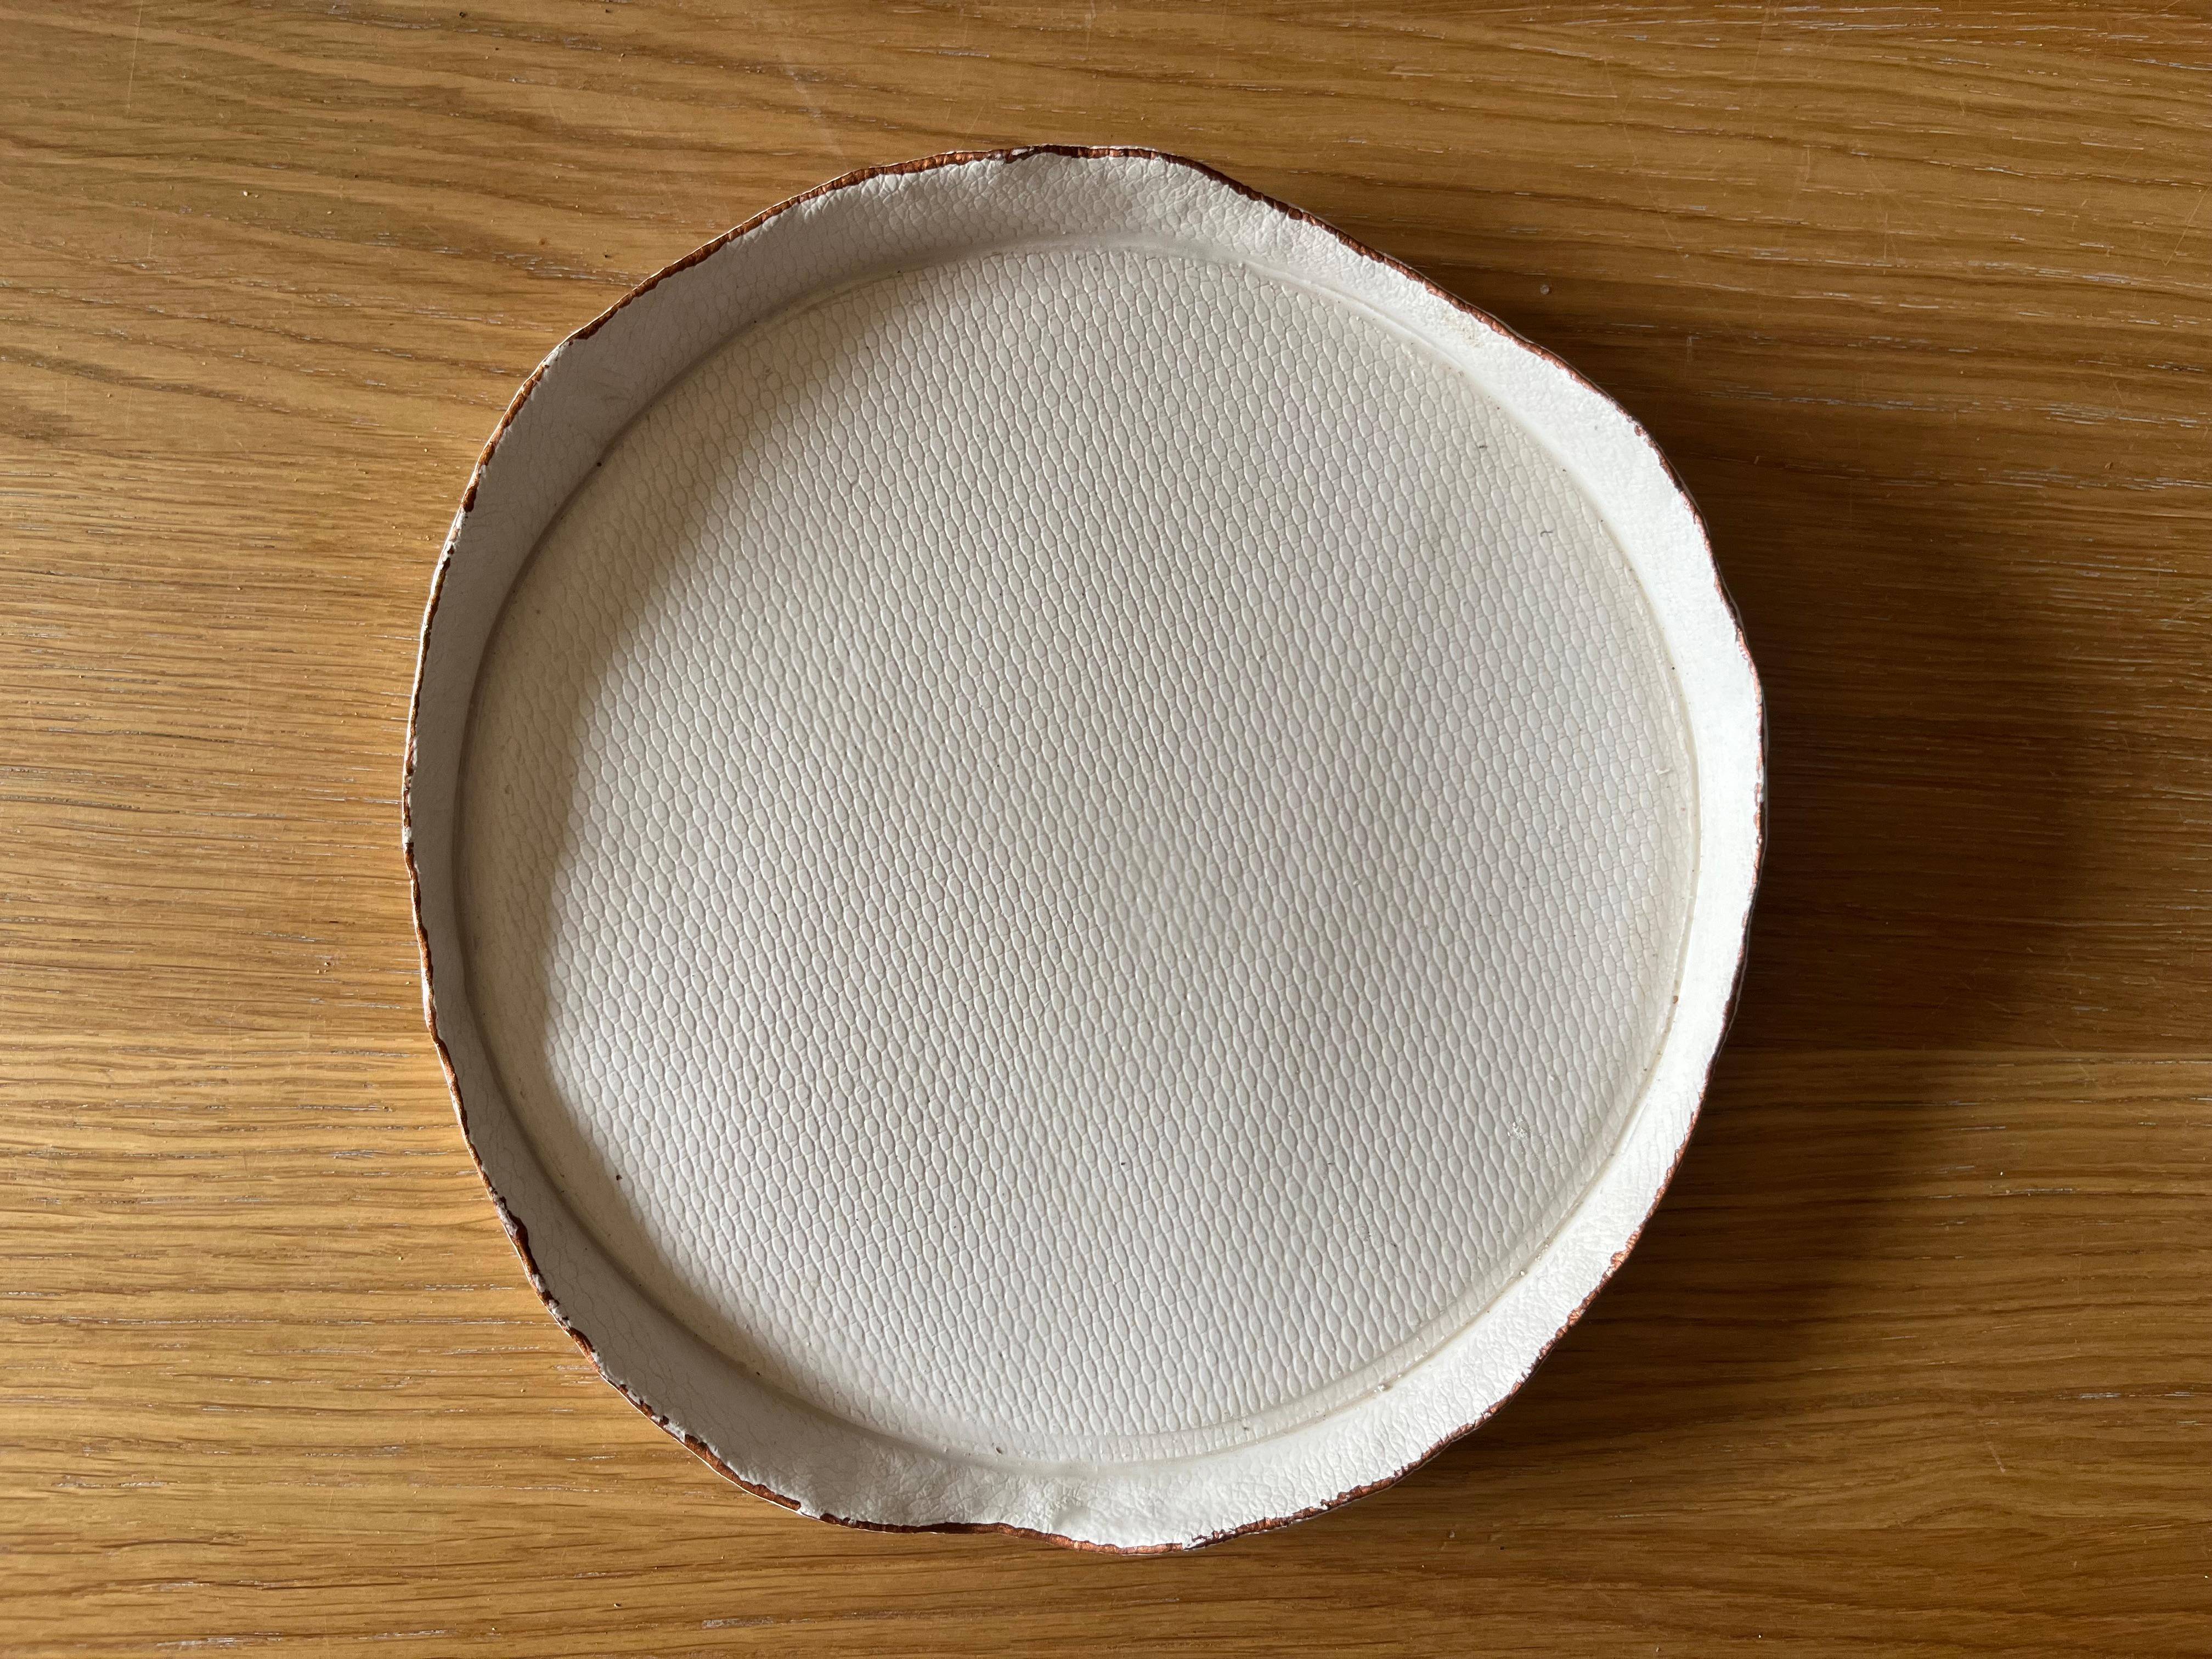 Hand-Crafted TESSUTI/Piatti decorativi in ceramica bianca opaca ispirati ai tessuti d'arredo. For Sale